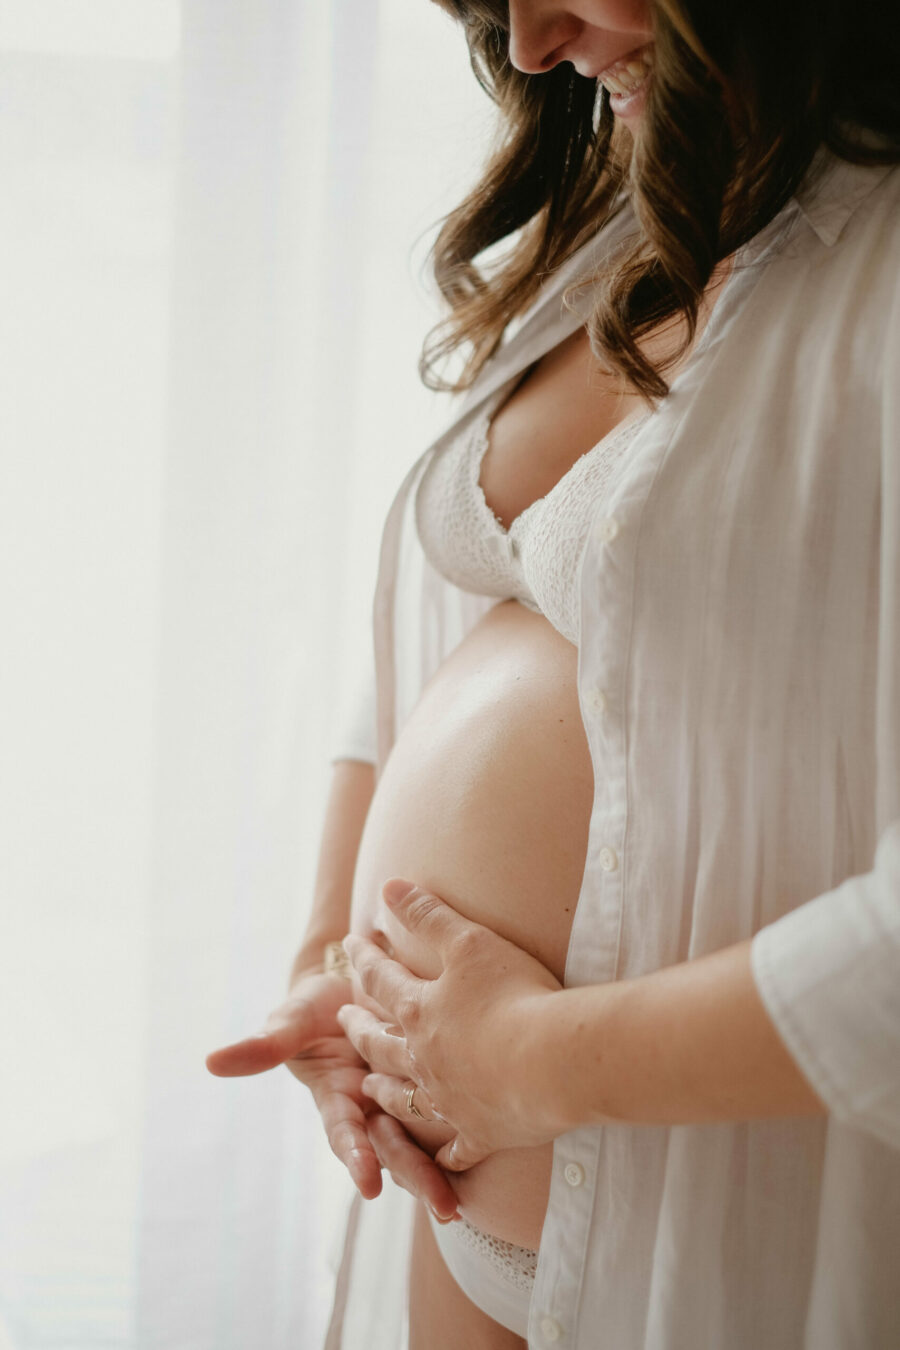 Femme enceinte qui applique de l'huile anti vergeture sur son ventre